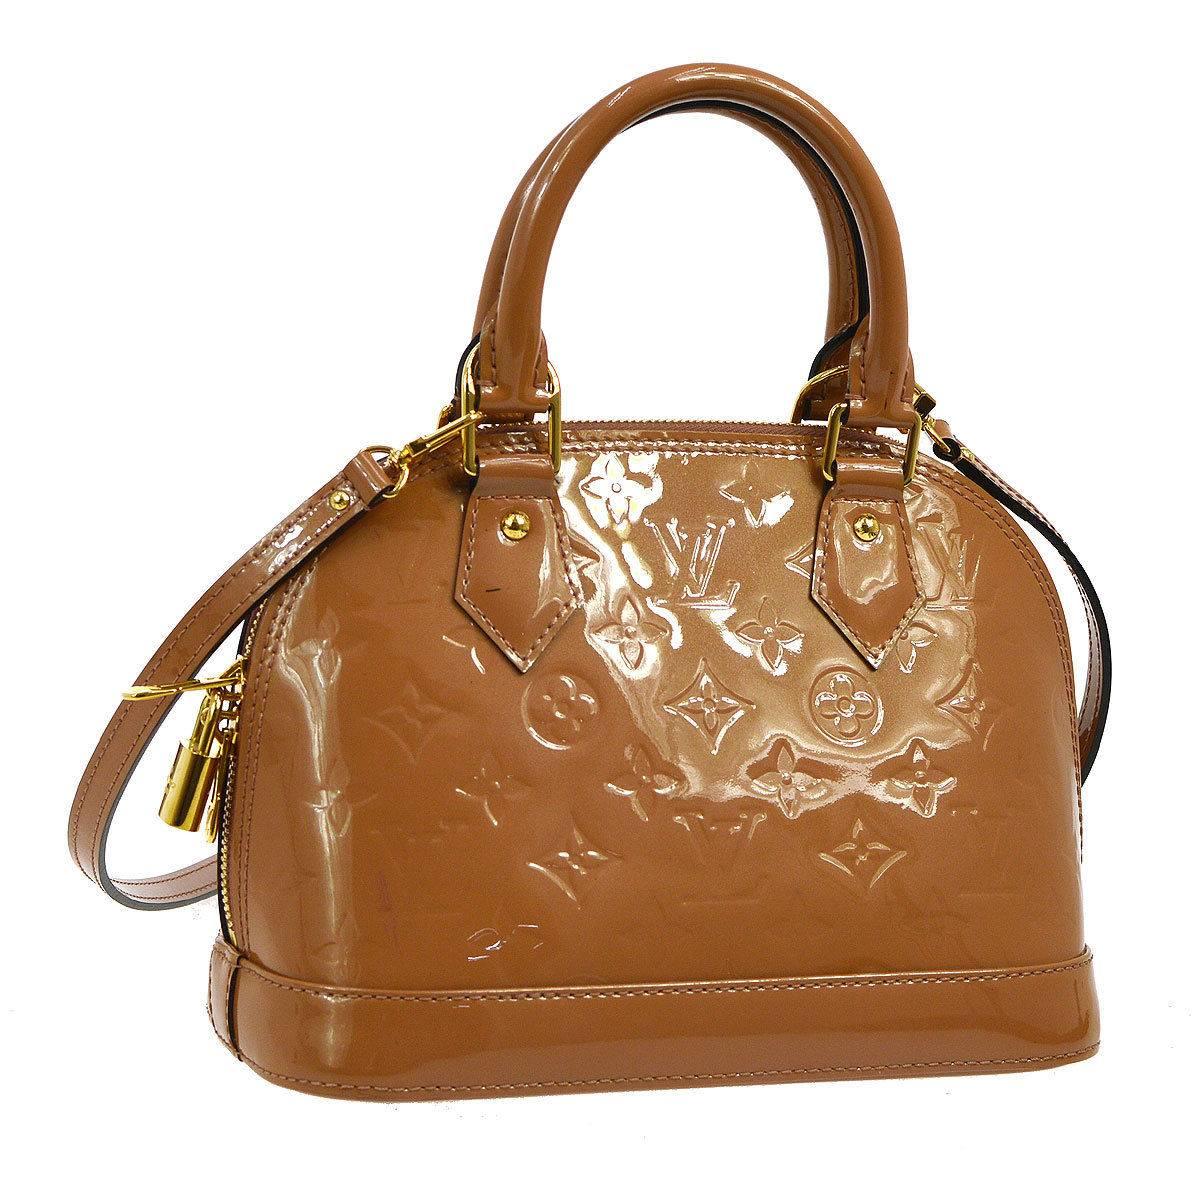 Louis Vuitton Cognac Patent Top Handle Satchel Shoulder Bag With All Accessories